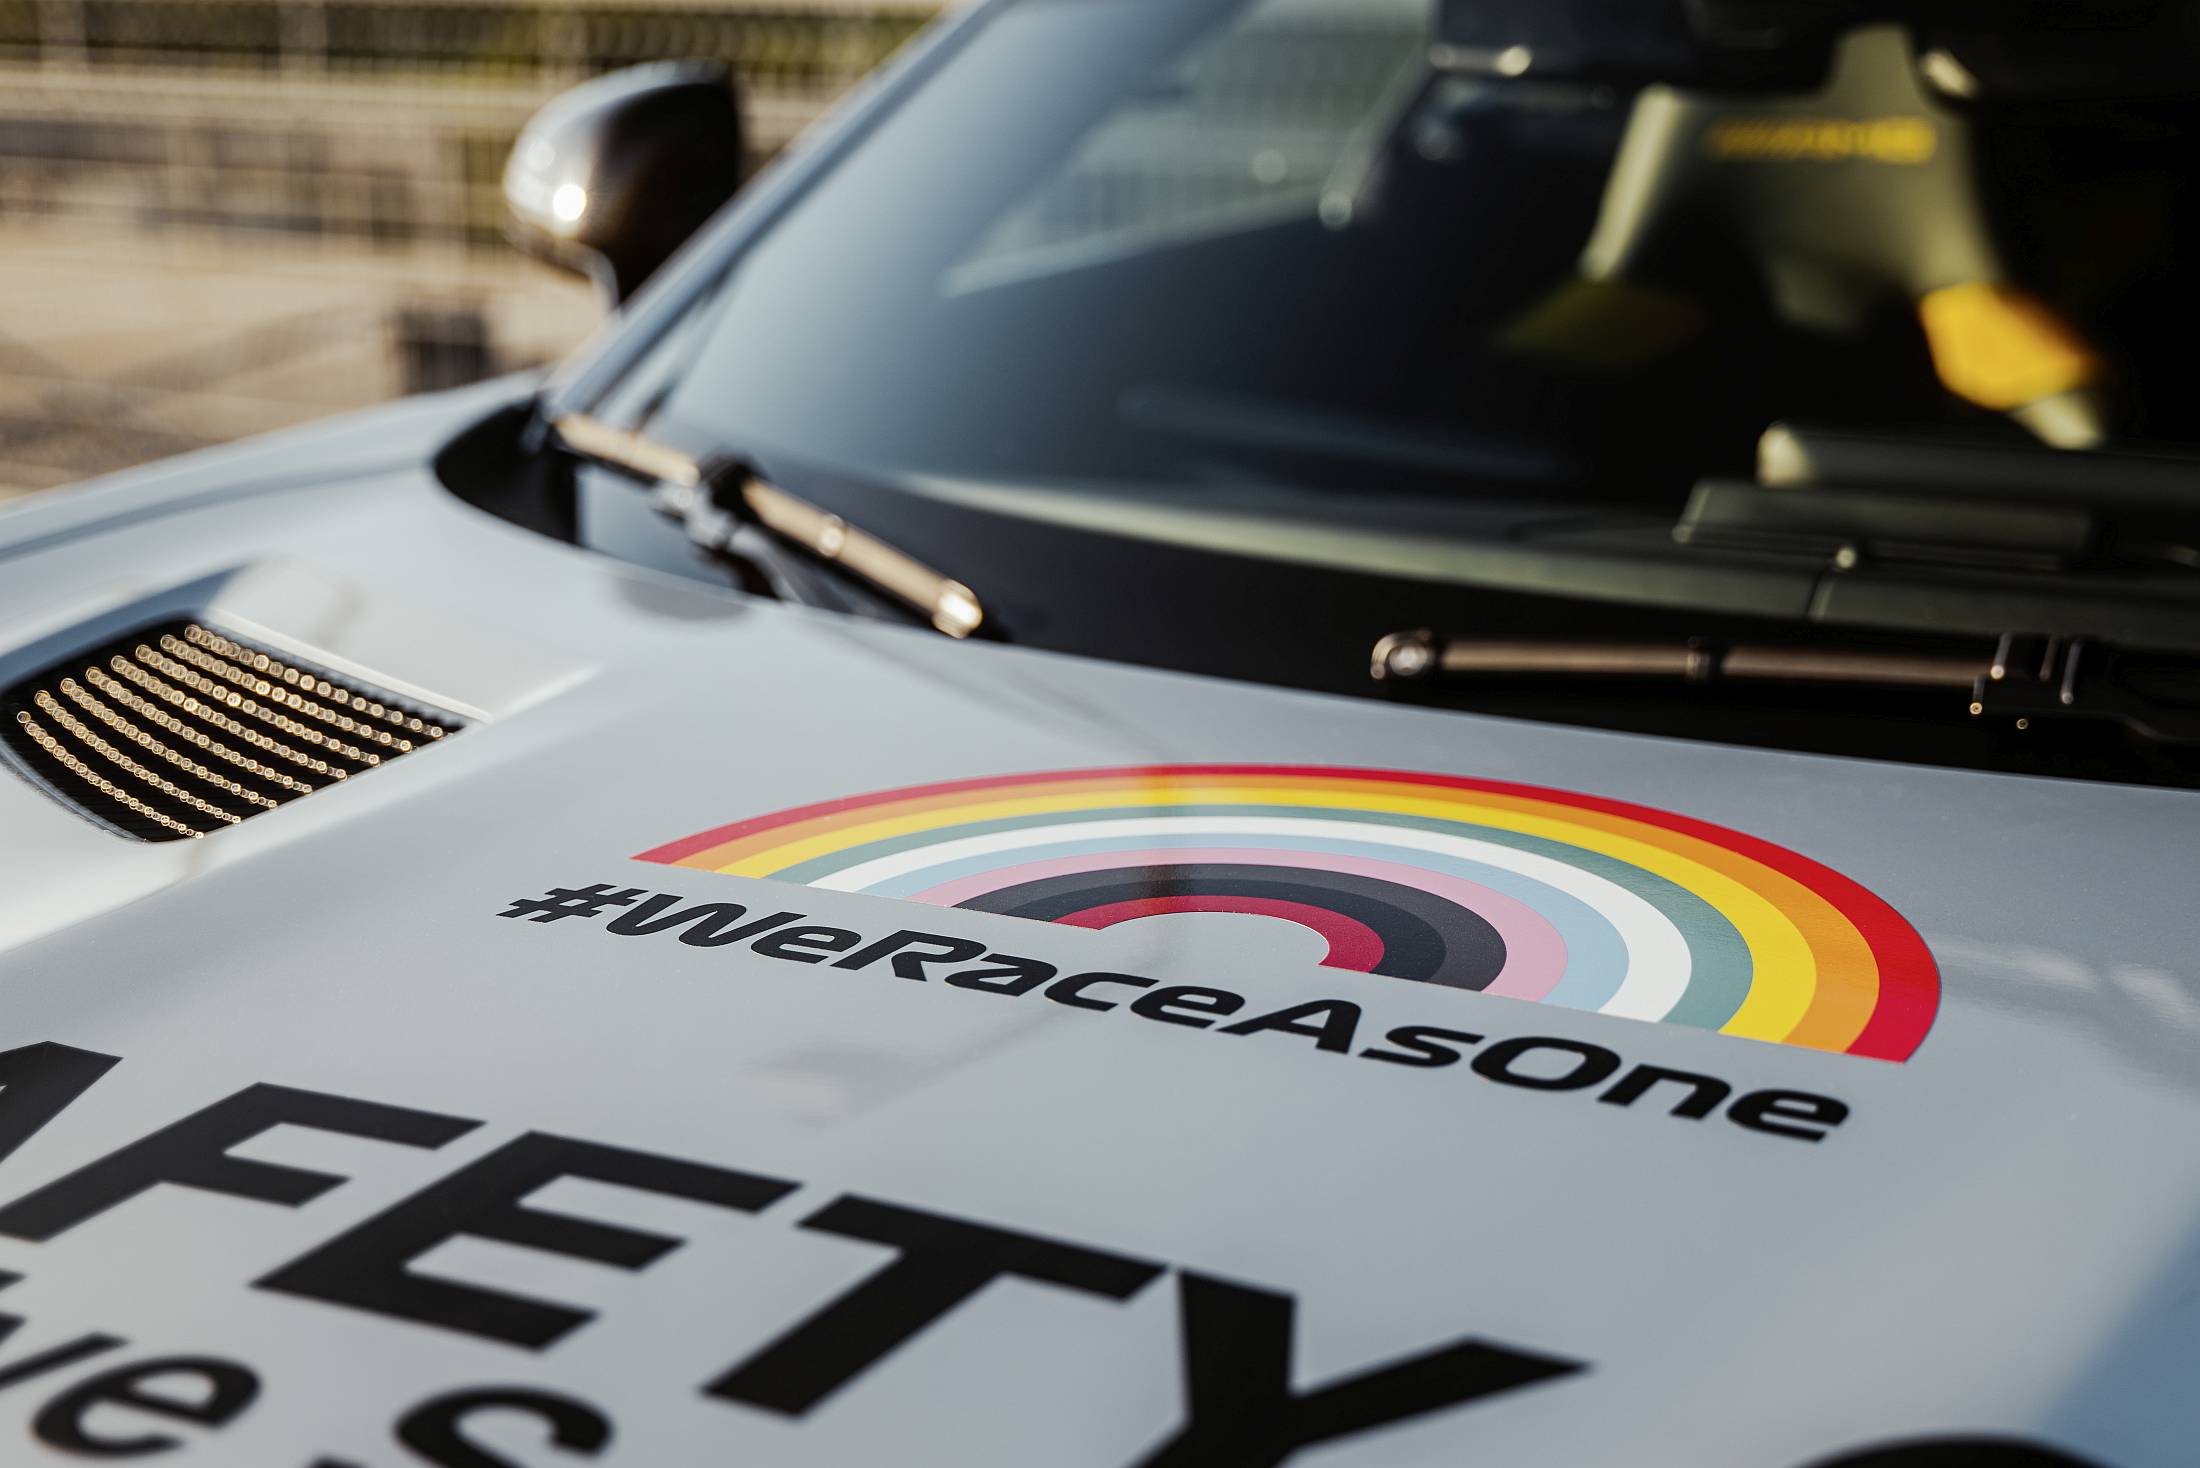 Mercedes-AMG GT R Official FIA F1 Safety Car im neuen Look: Das neue Design des Formel 1 Safety Car setzt Zeichen für Solidarität, Sicherheit und Vielfalt

Mercedes-AMG GT R Official FIA F1 Safety Car with a new look: The new design of the Formula 1 Safe